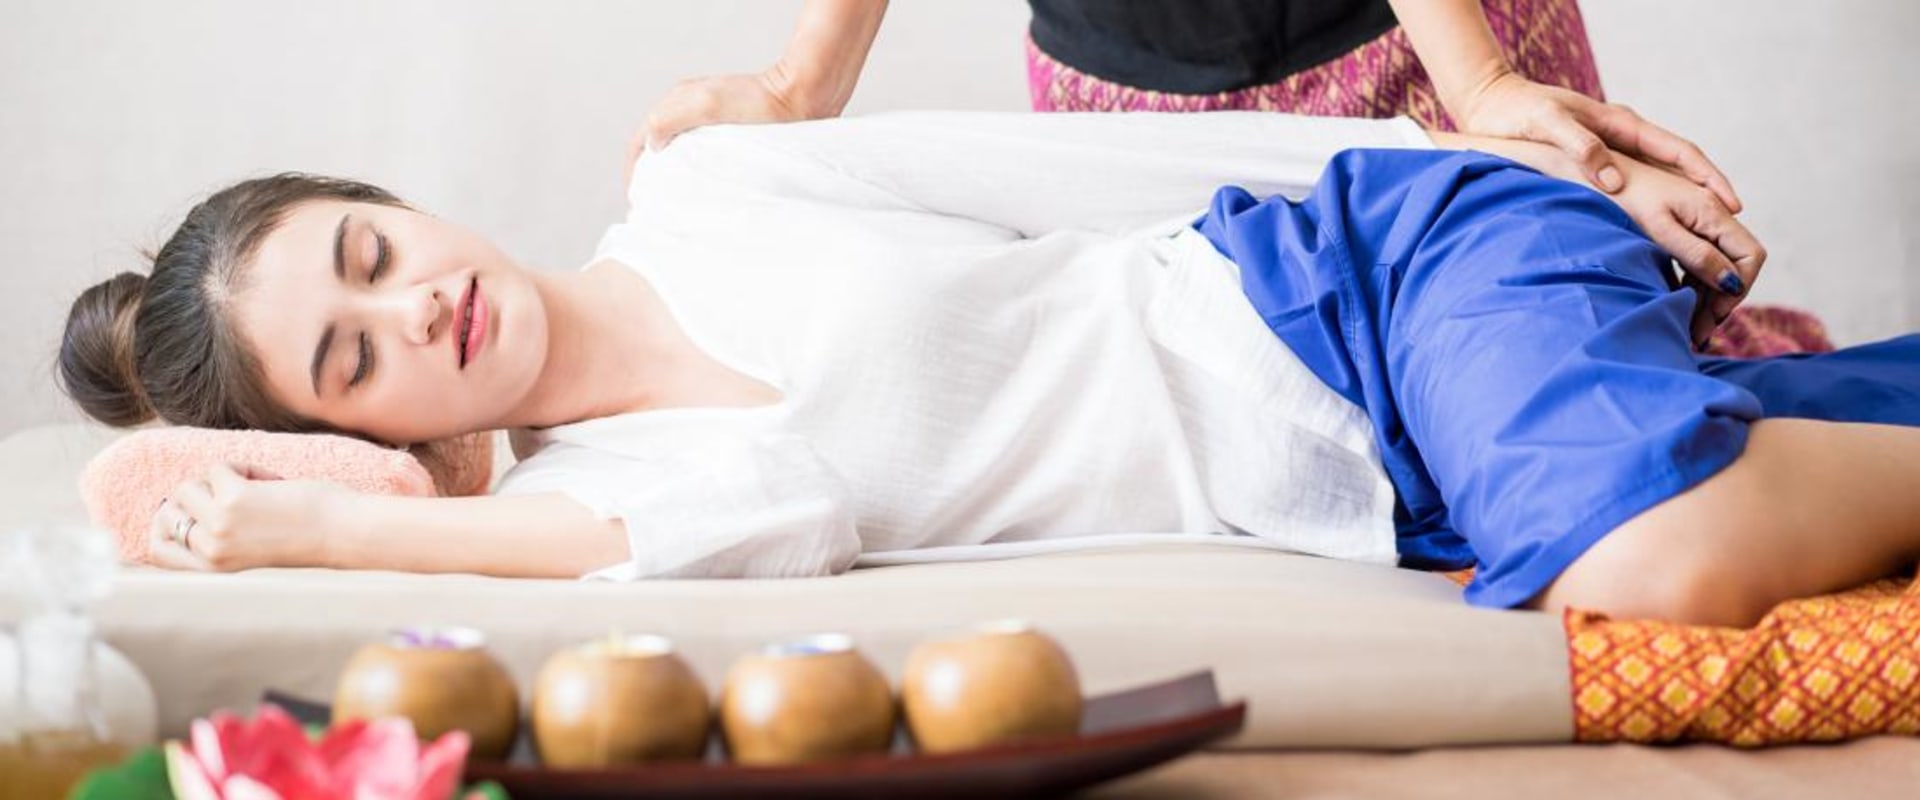 Was ist das besondere an der thailändischen massage?